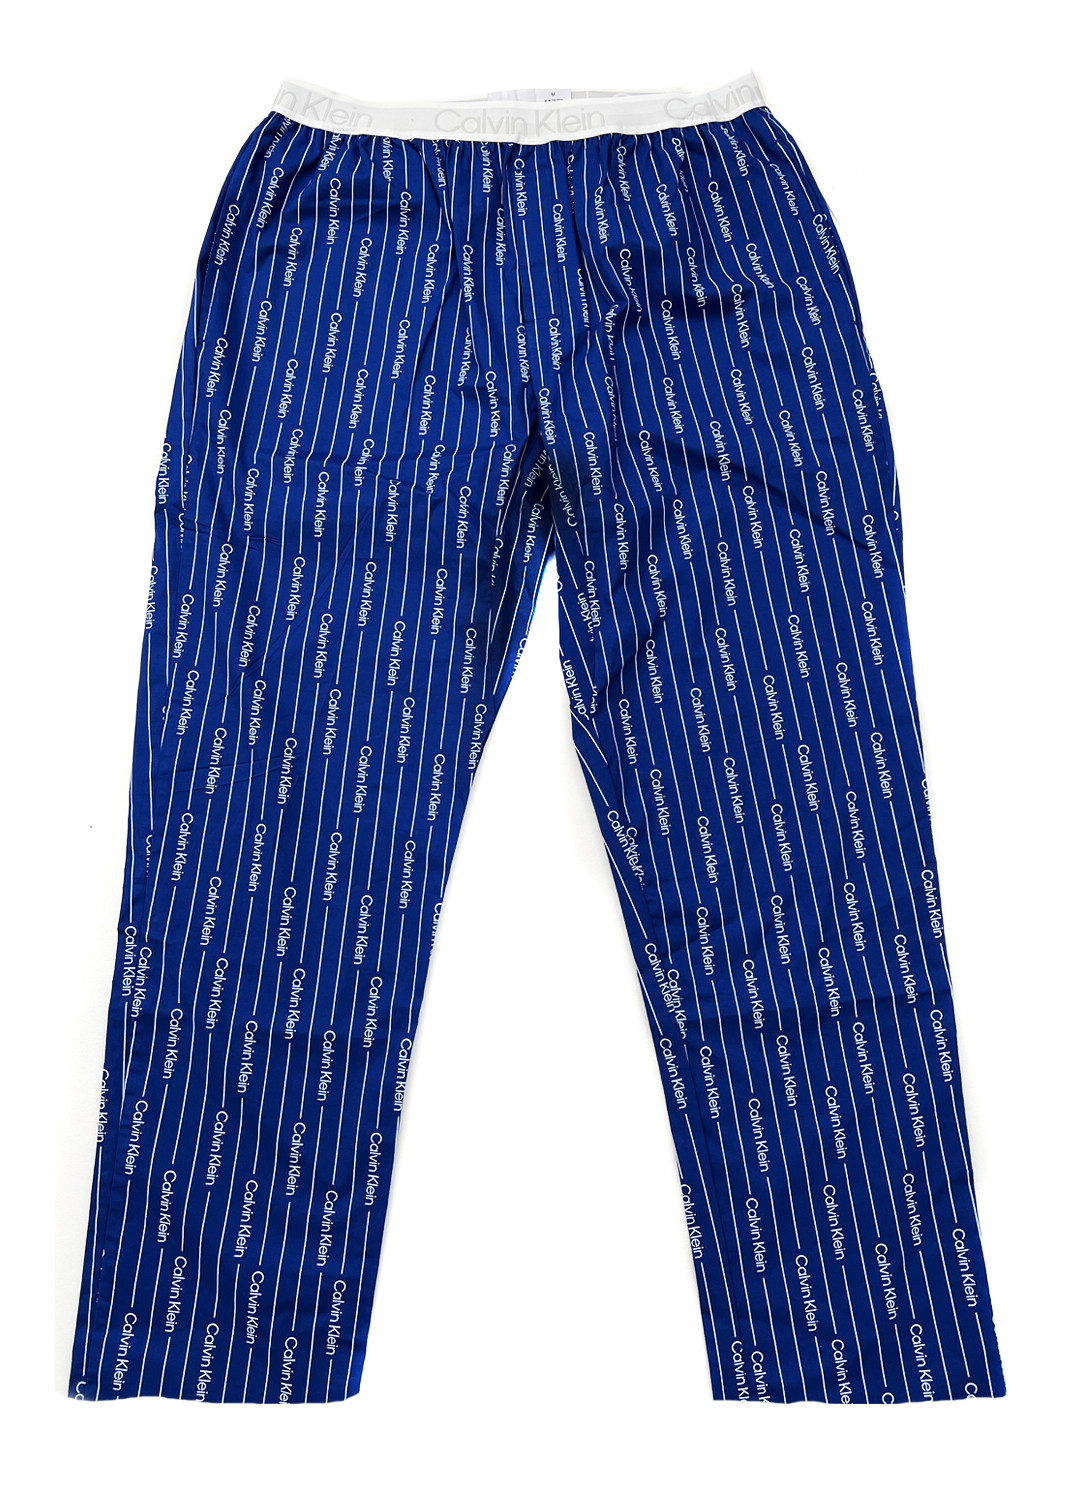 Pánské pyžamové kalhoty - NM2180E 1MR - modrá/bílá - Calvin Klein modrá/bílá M